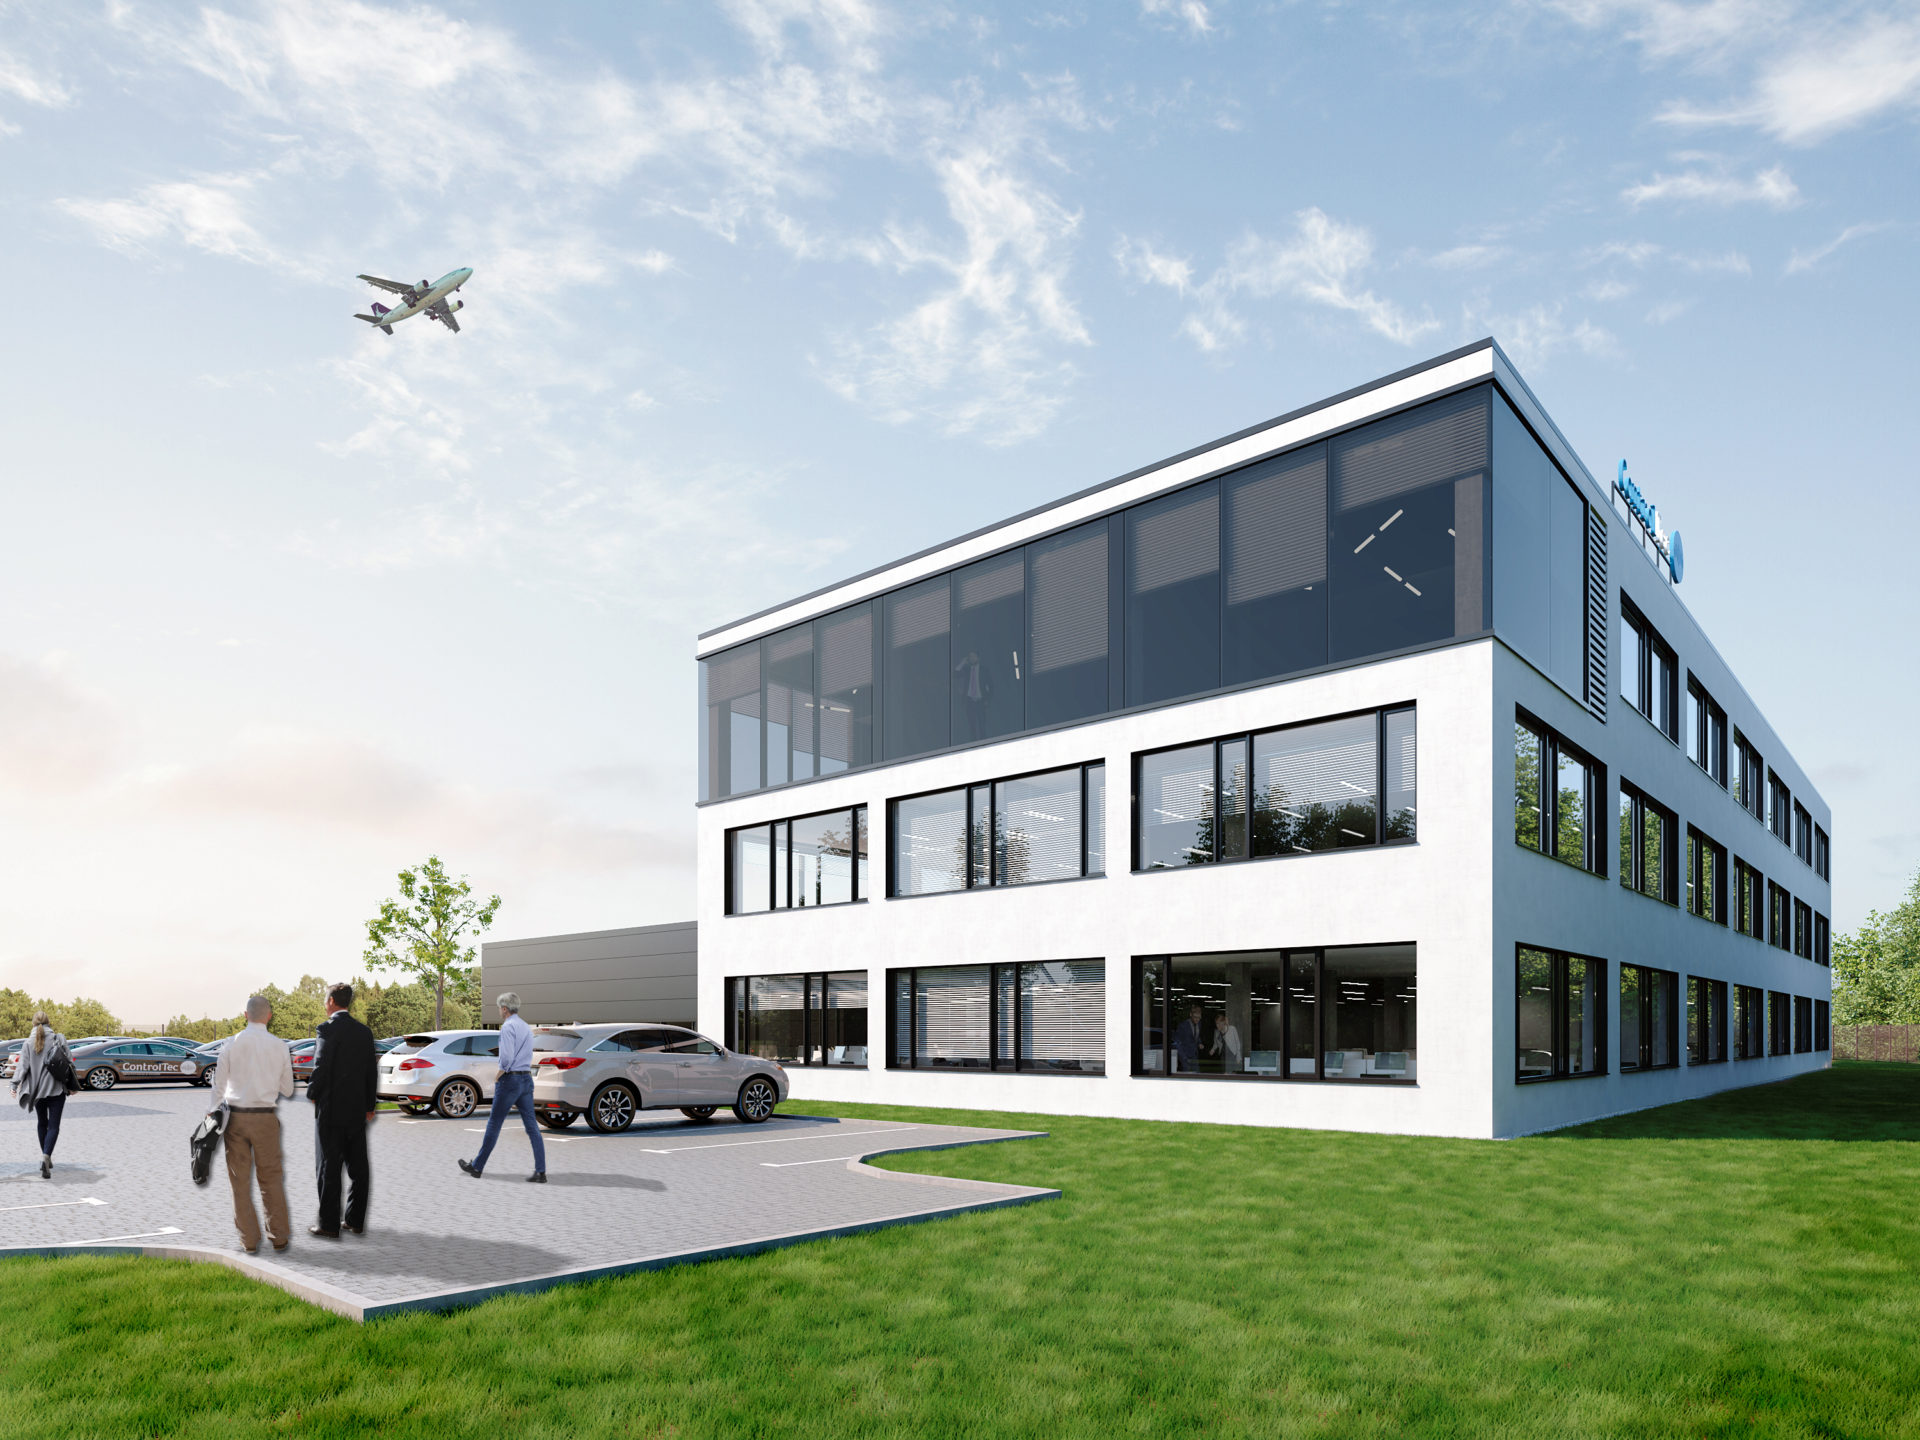 Projekt hali przemysłowej wraz z biurowcem dla firmy Controltec, Wrocław, rok 2019